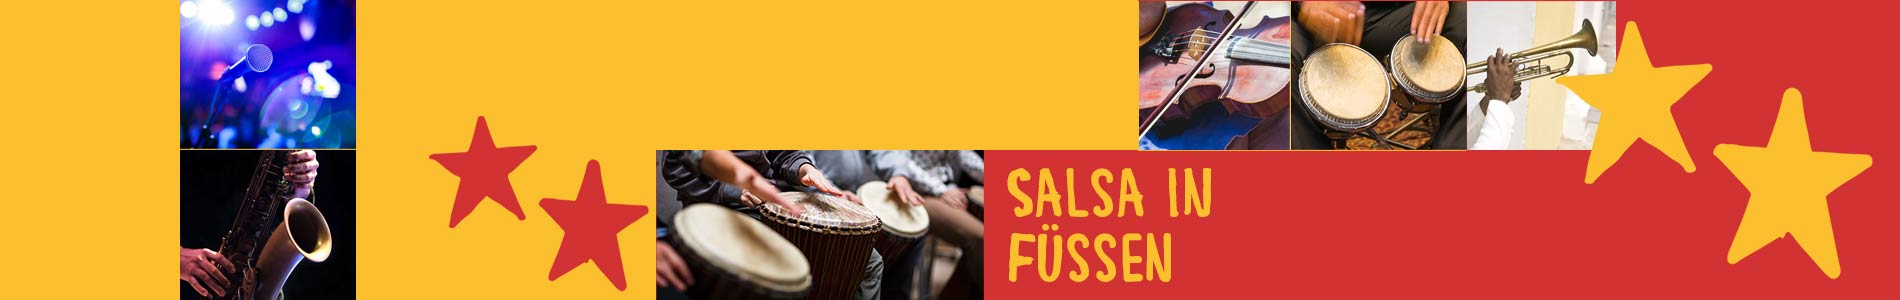 Salsa in Füssen – Salsa lernen und tanzen, Tanzkurse, Partys, Veranstaltungen